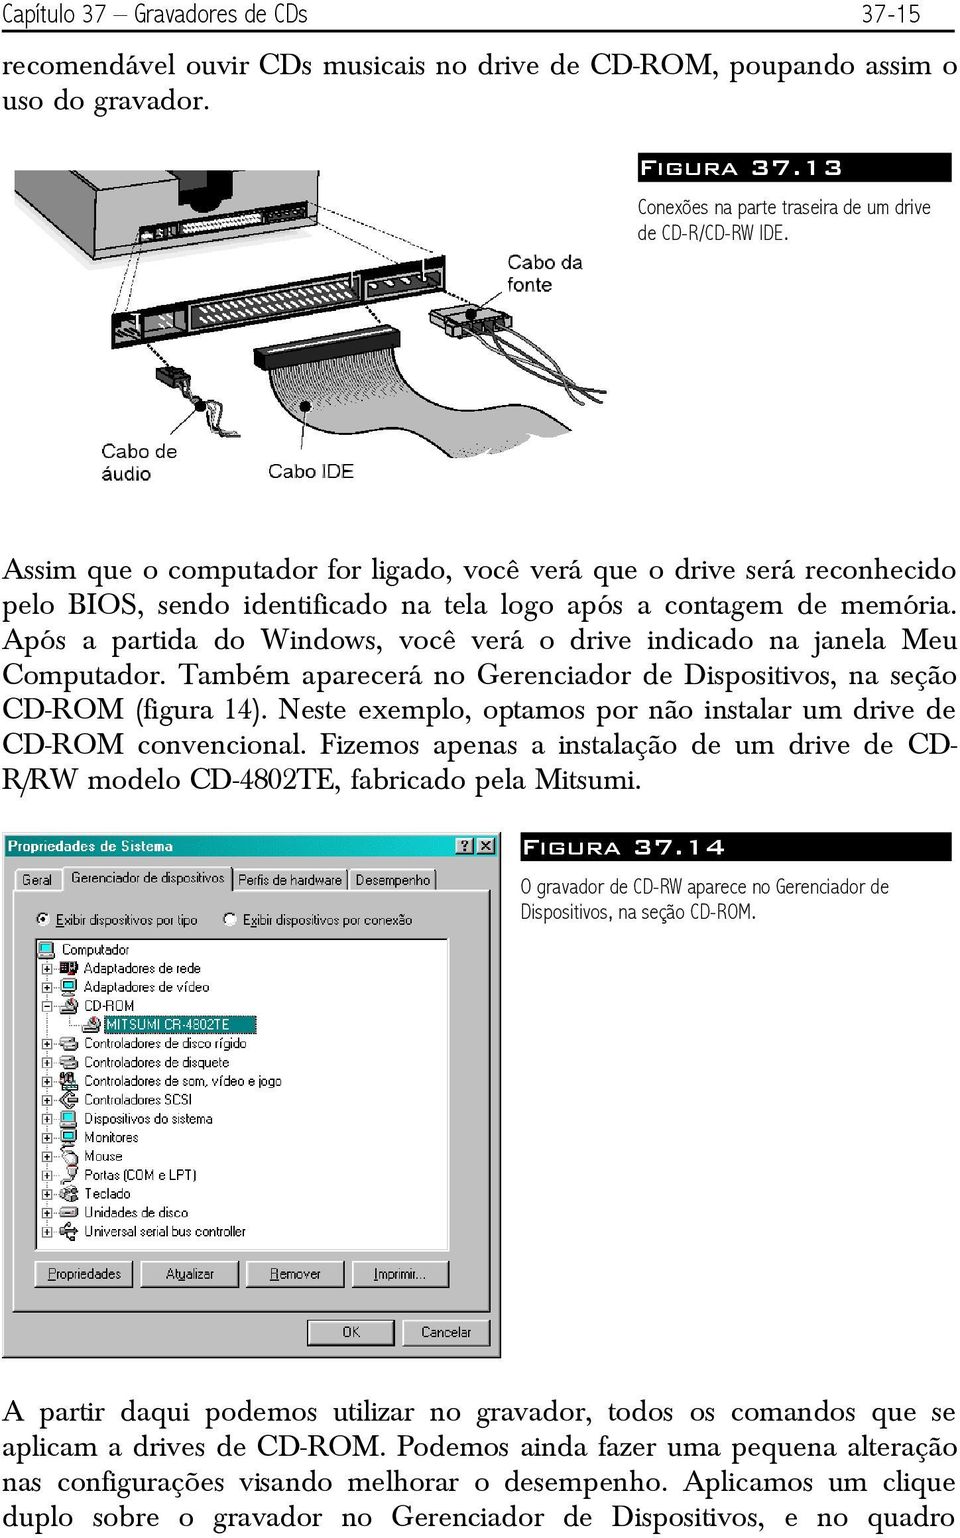 Após a partida do Windows, você verá o drive indicado na janela Meu Computador. Também aparecerá no Gerenciador de Dispositivos, na seção CD-ROM (figura 14).